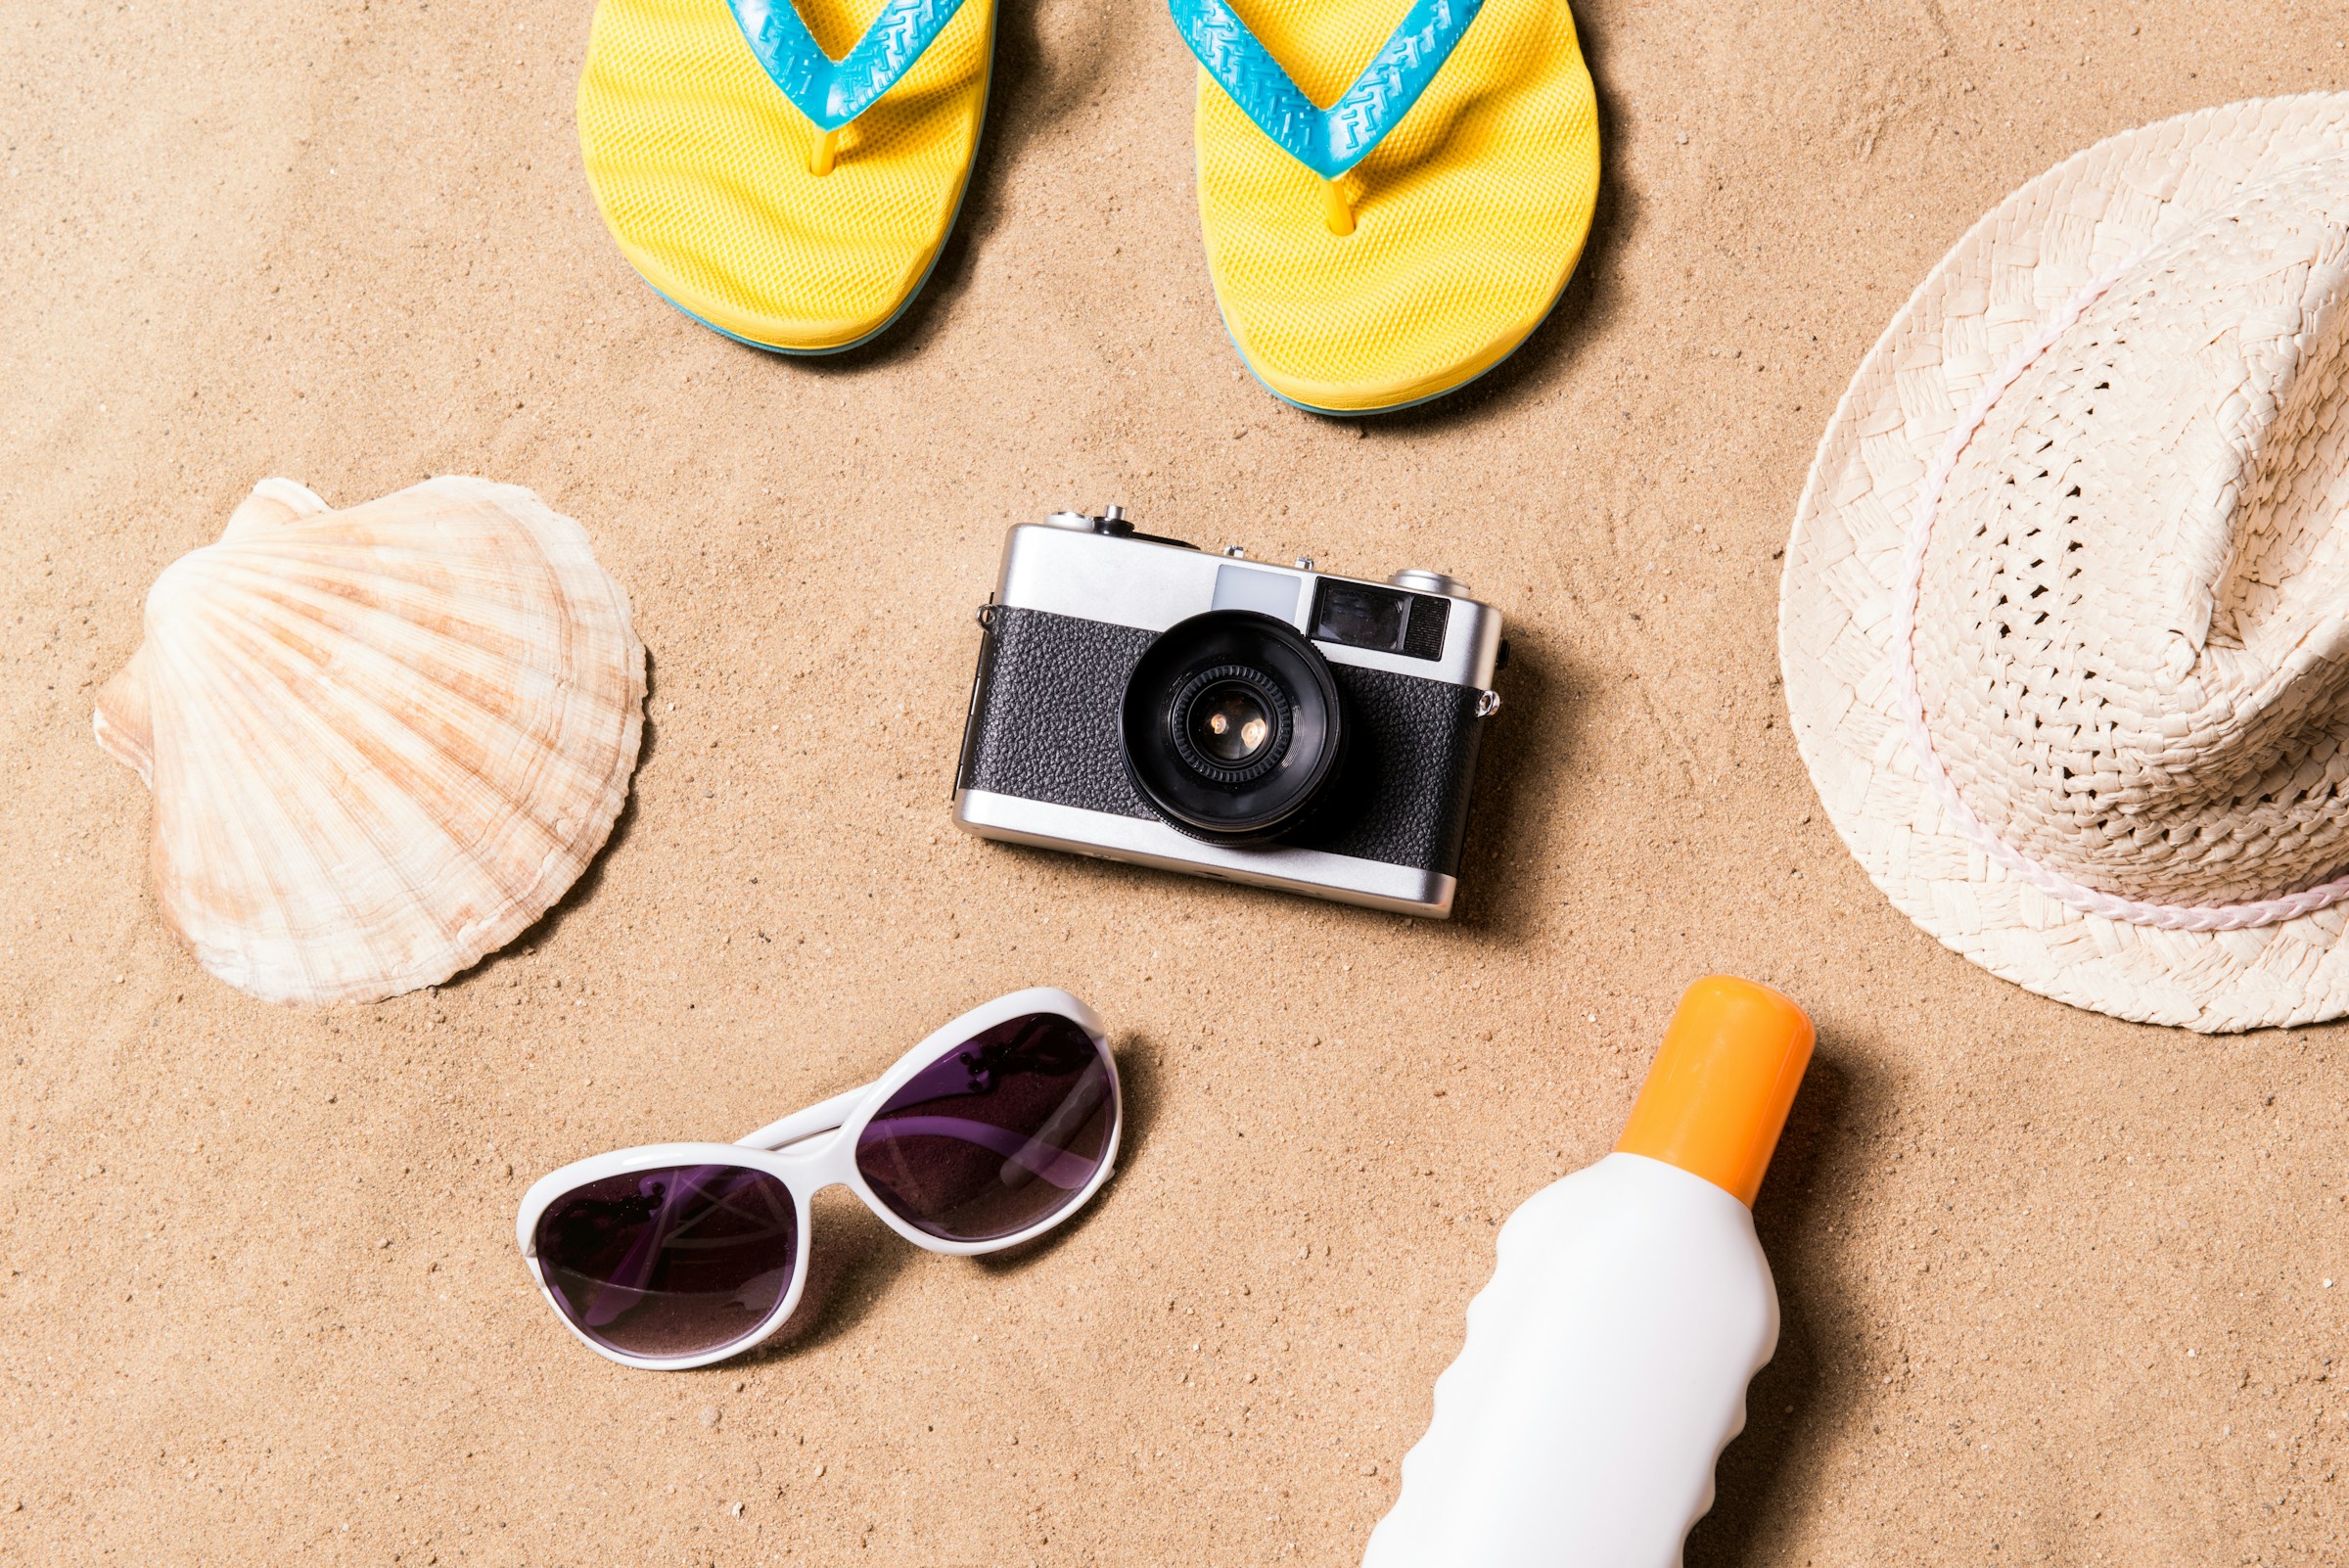 Reiseprodukter som lue, kamera og solkrem på en sandstrand